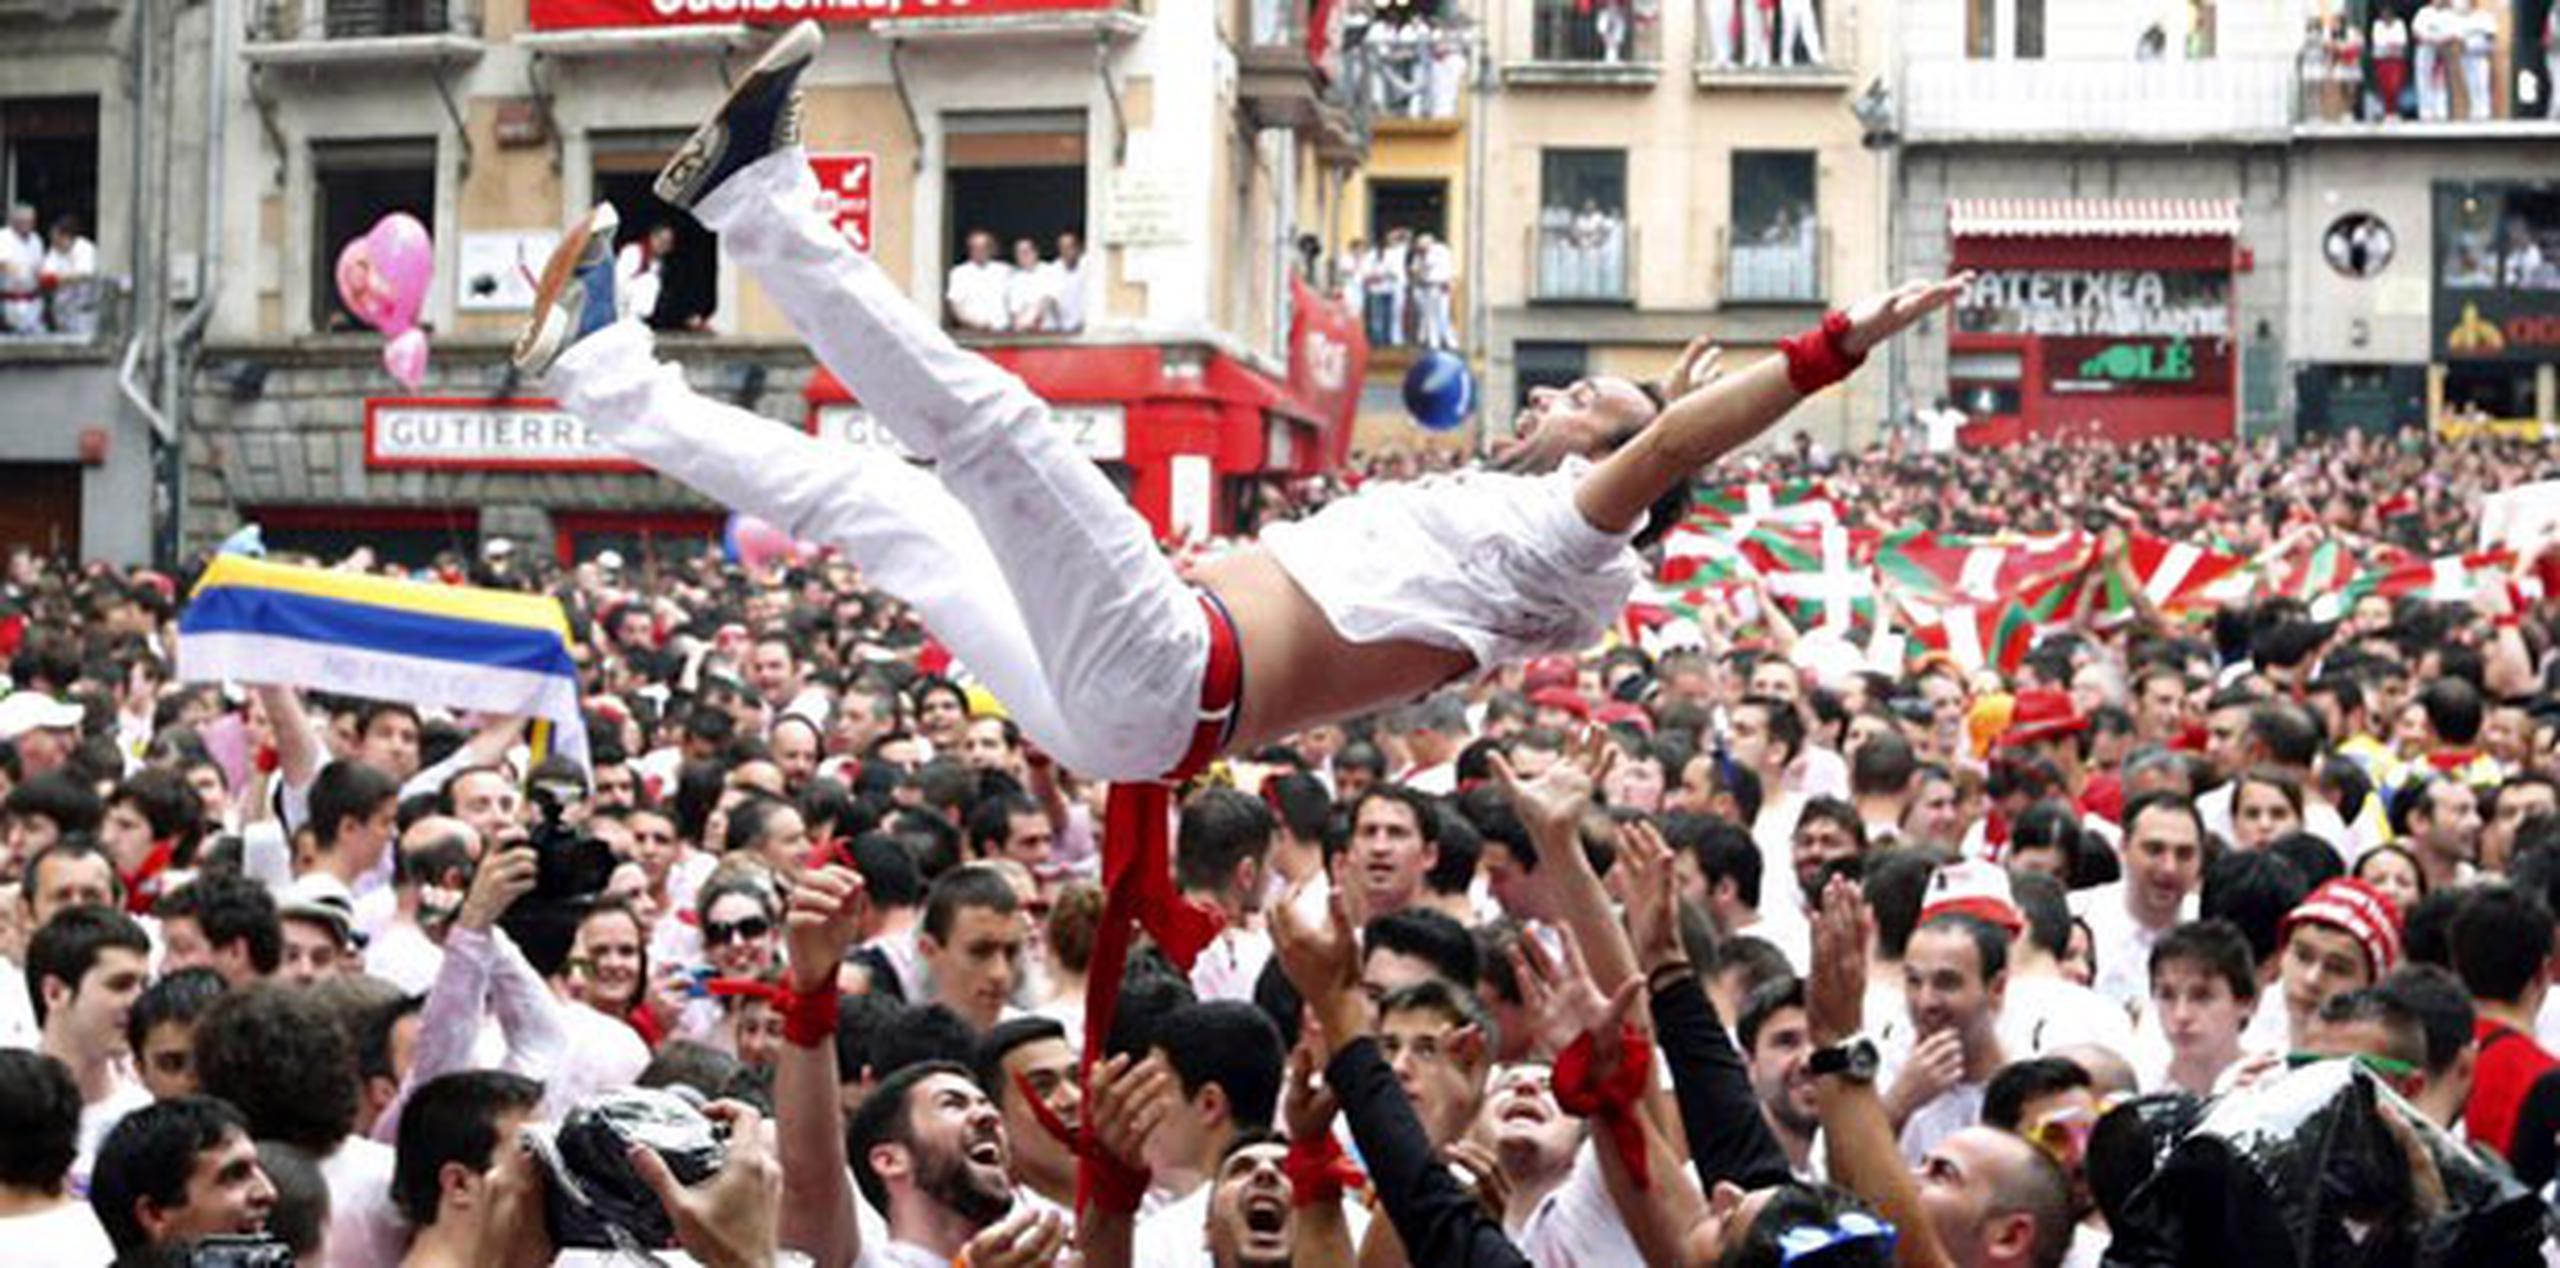 A las doce del mediodía, las fiestas de San Fermín iniciaron en Pamplona, en las que la ciudad se convierte durante nueve días en una marea blanca y roja que arropa los encierros de los toros e inunda los conciertos musicales. (EFE/Jesús Diges)